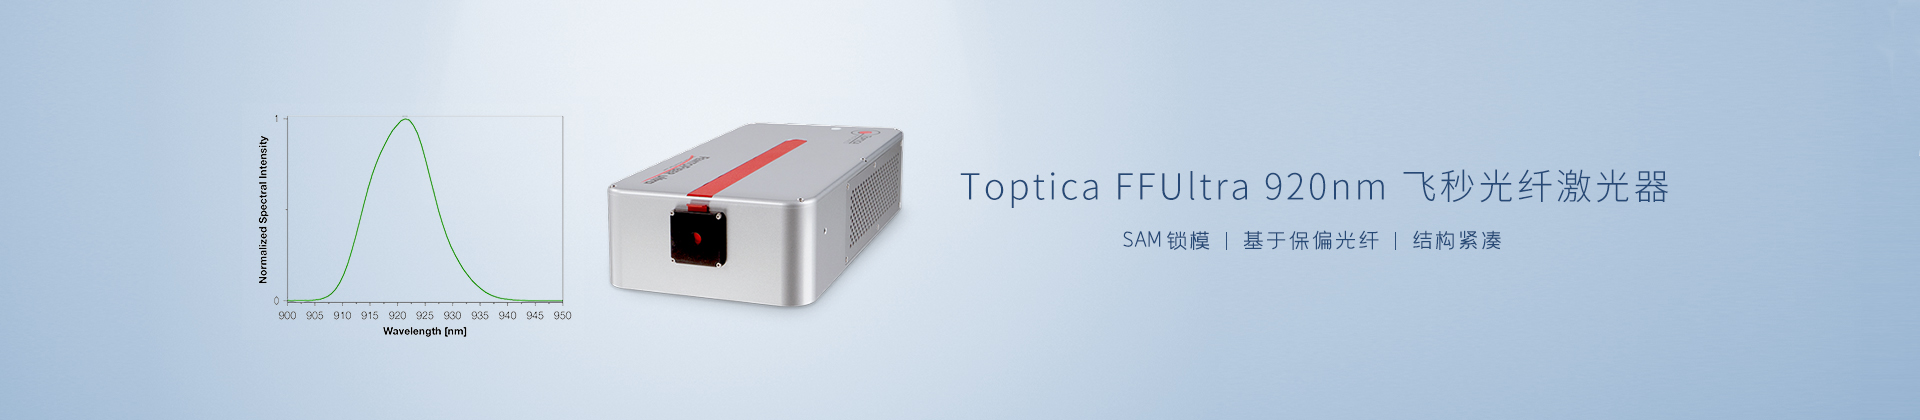 Toptica FFUltra 920nm飞秒光纤激光器